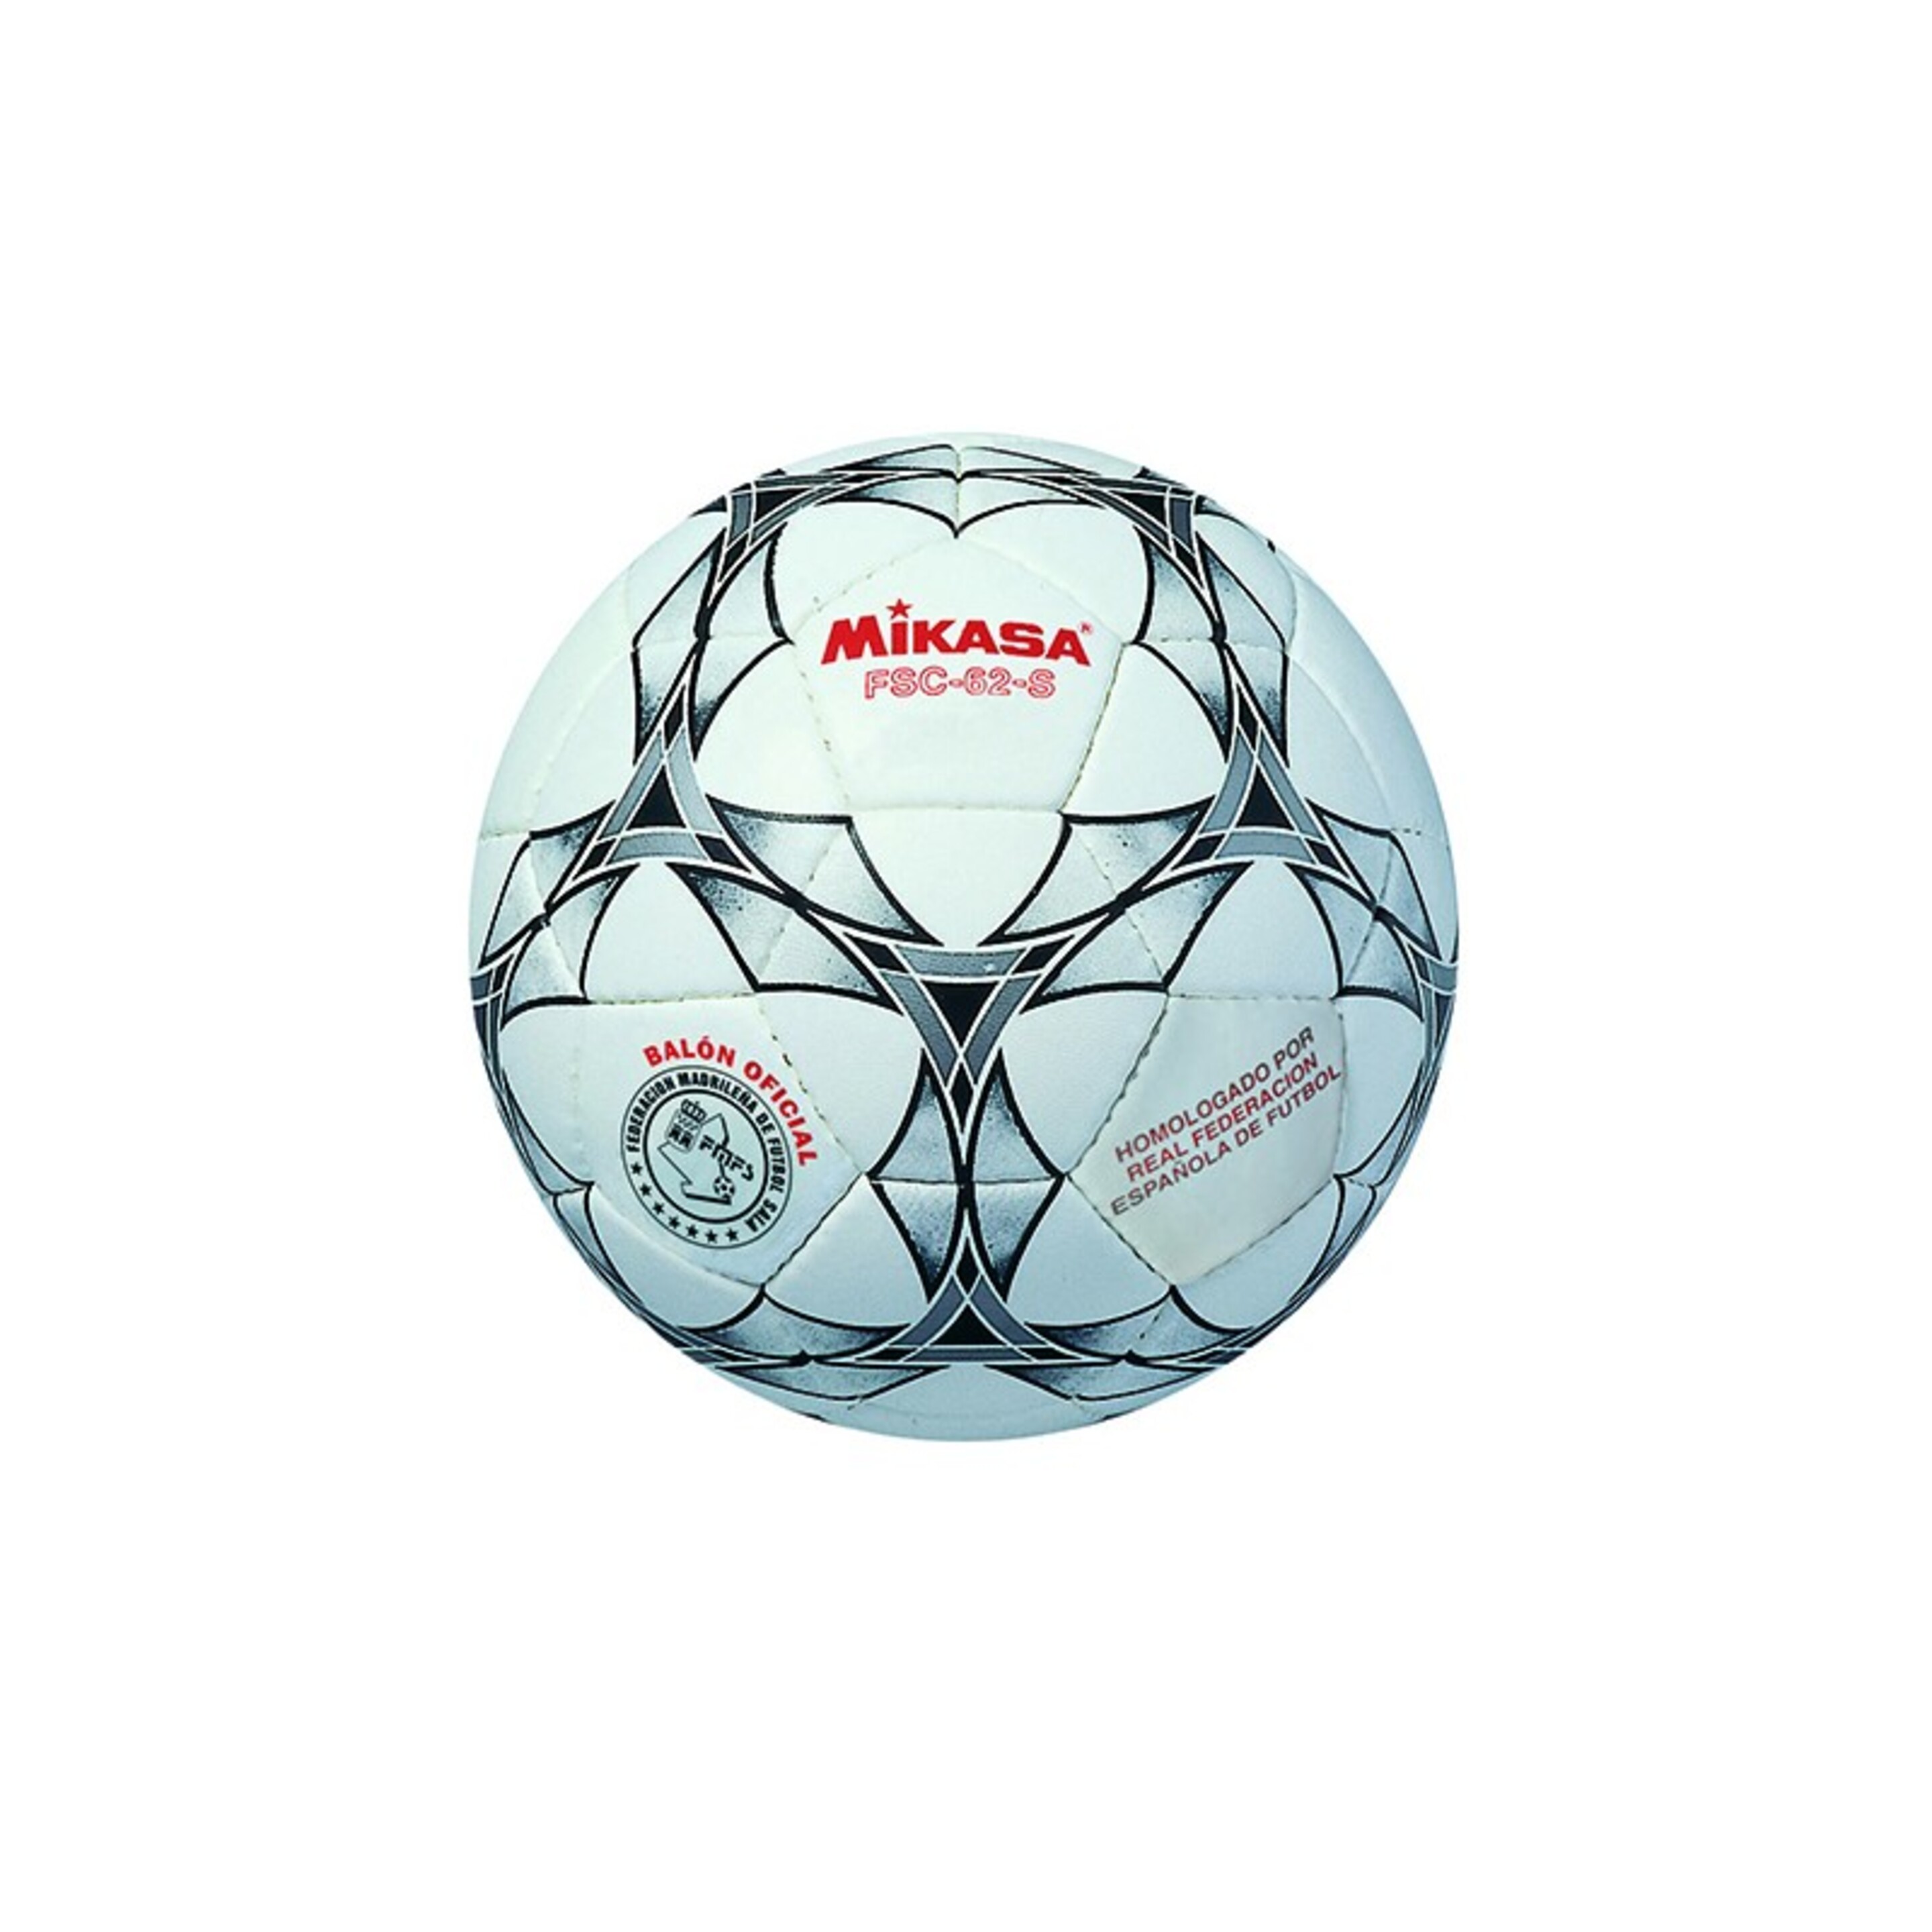 Balon Futbol Sala Mikasa Fsc-62 S